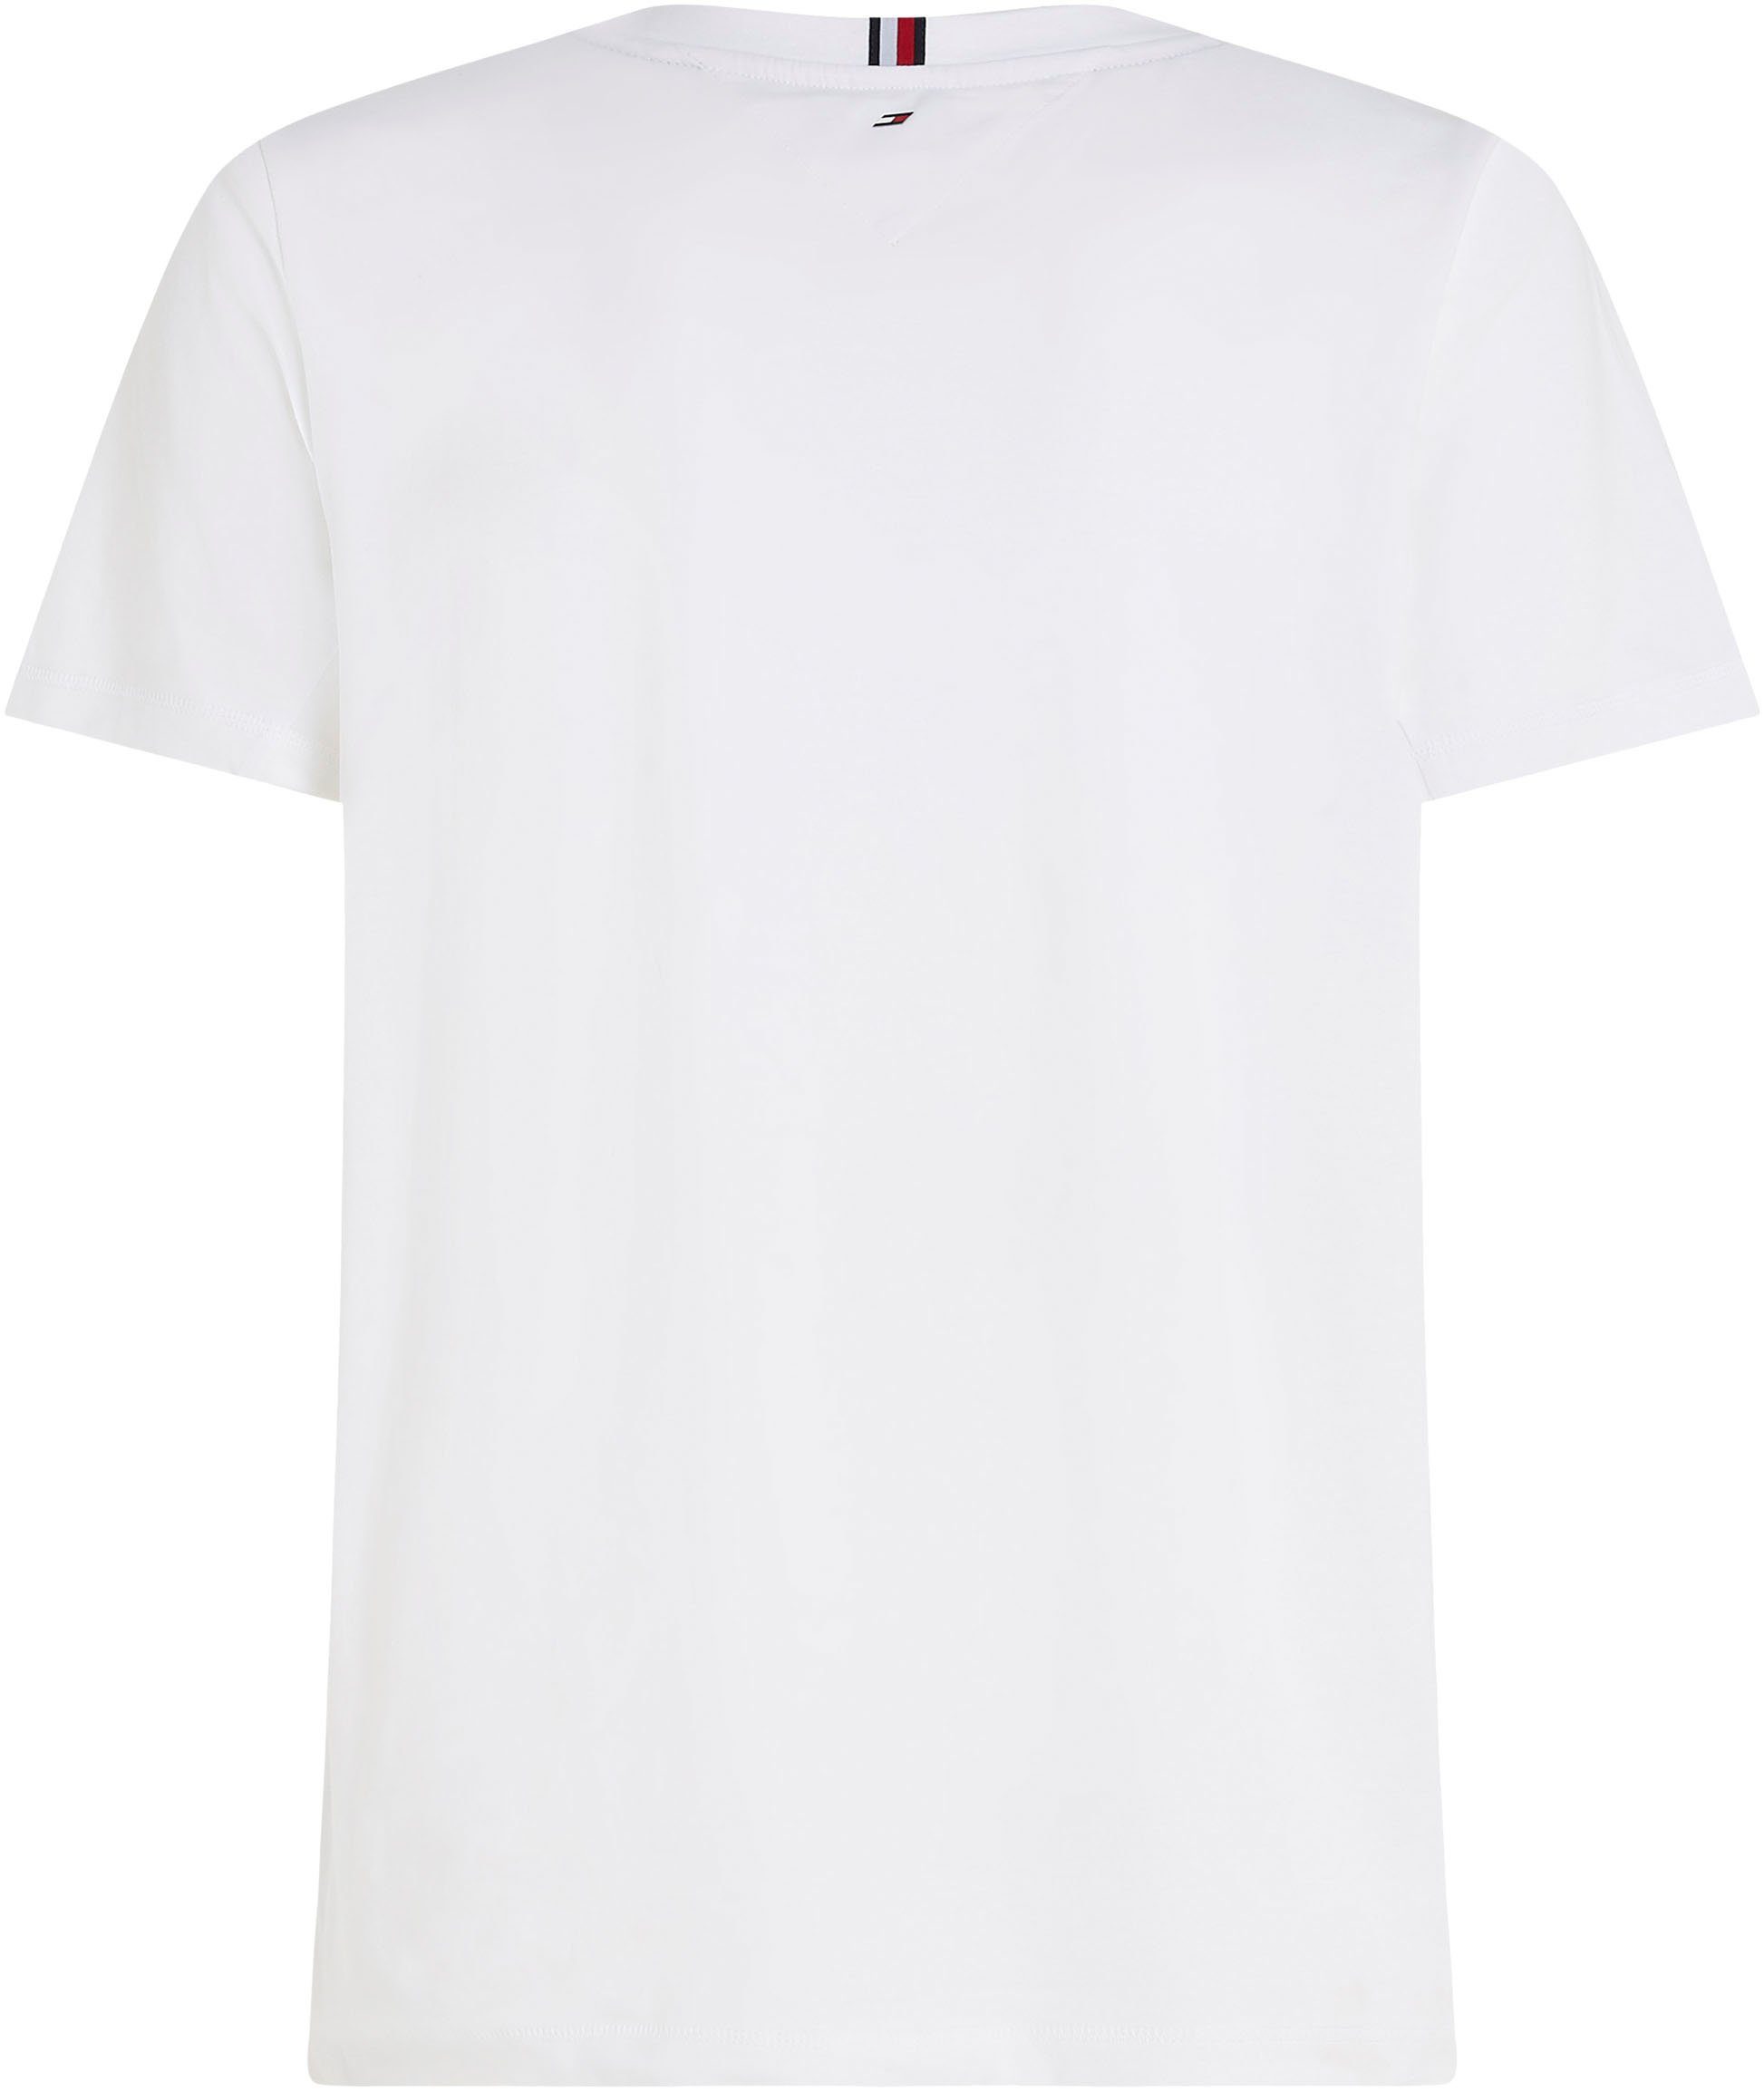 auf T-Shirt ESSENTIAL Brust Optic der BIG White Sport Hilfiger mit Tommy LOGO Logodruck Hilfiger TEE Tommy